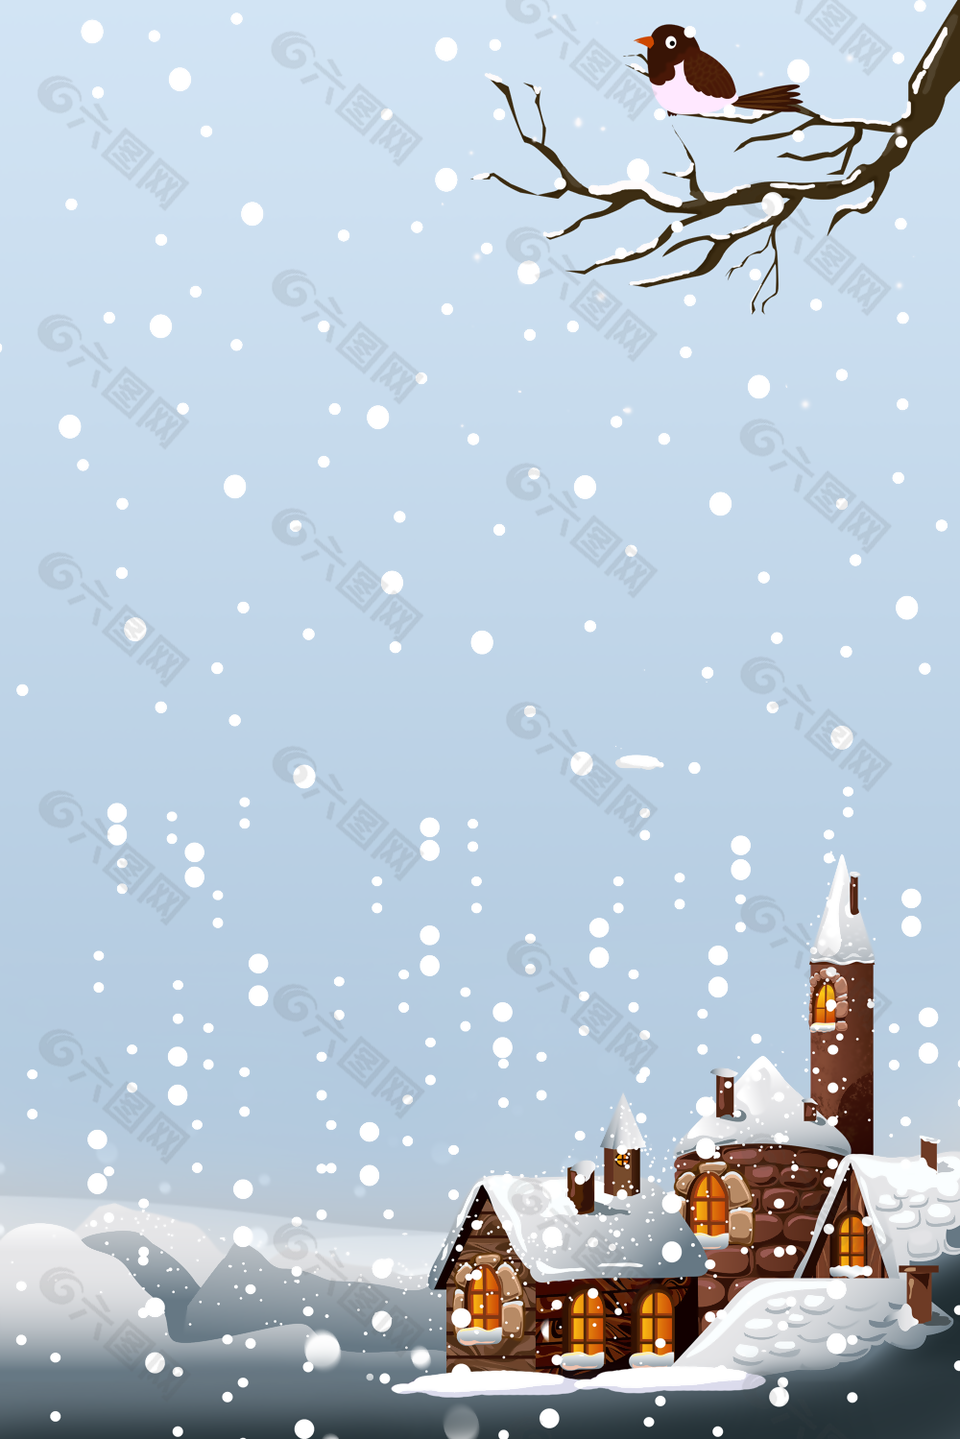 简约手绘卡通冬季雪景H5背景图下载